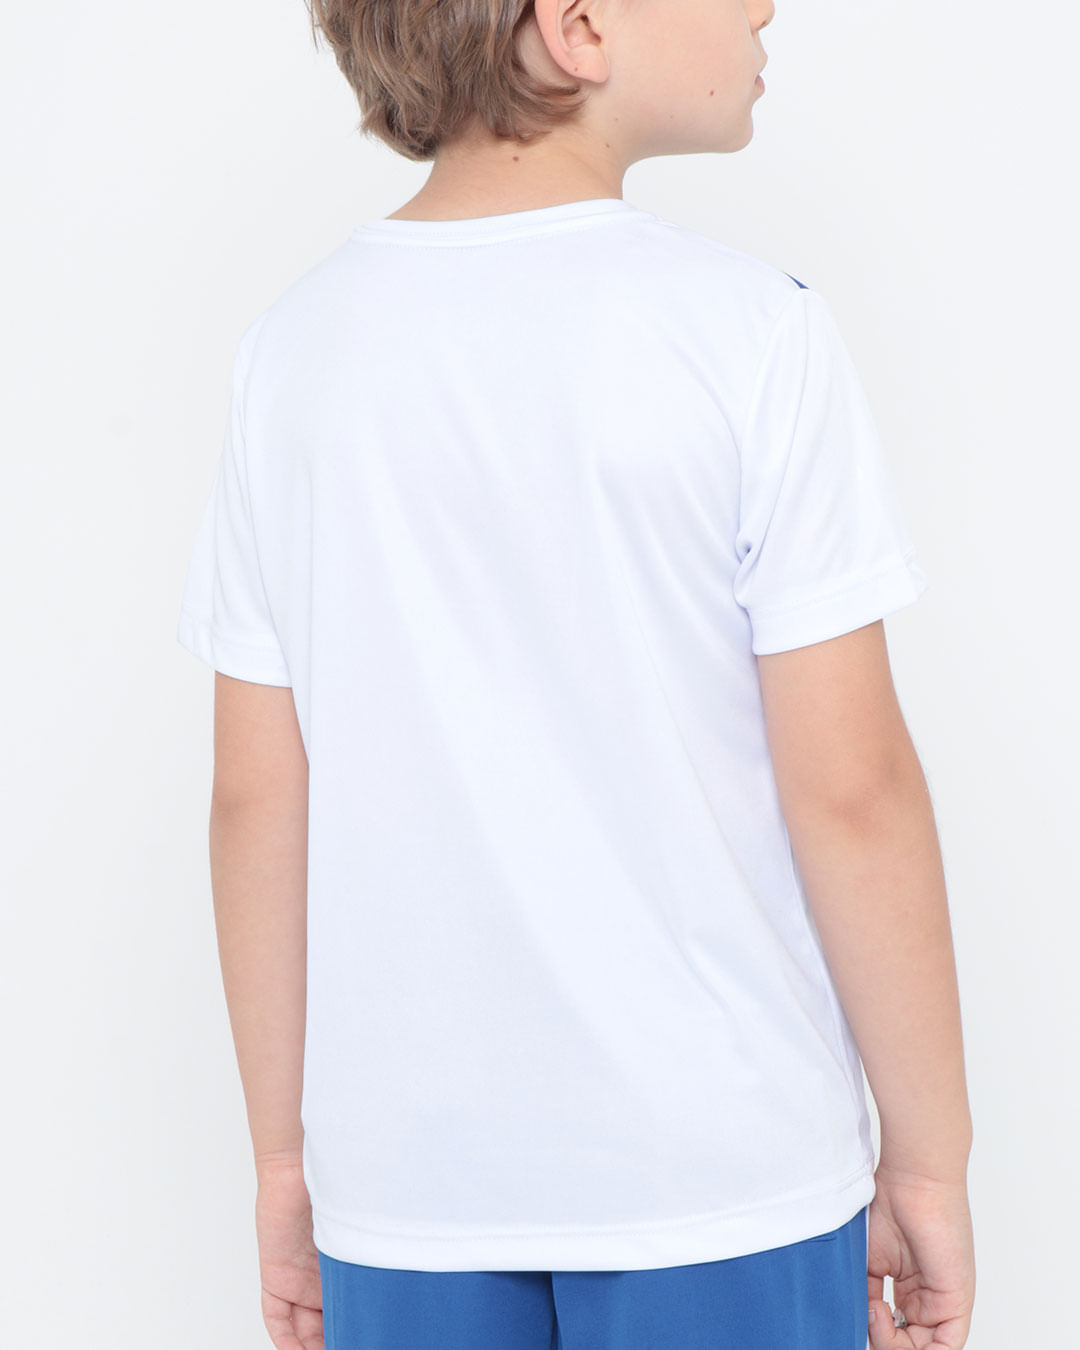 Camiseta-10017-Mc-Dry-Fit-M-48---Branco